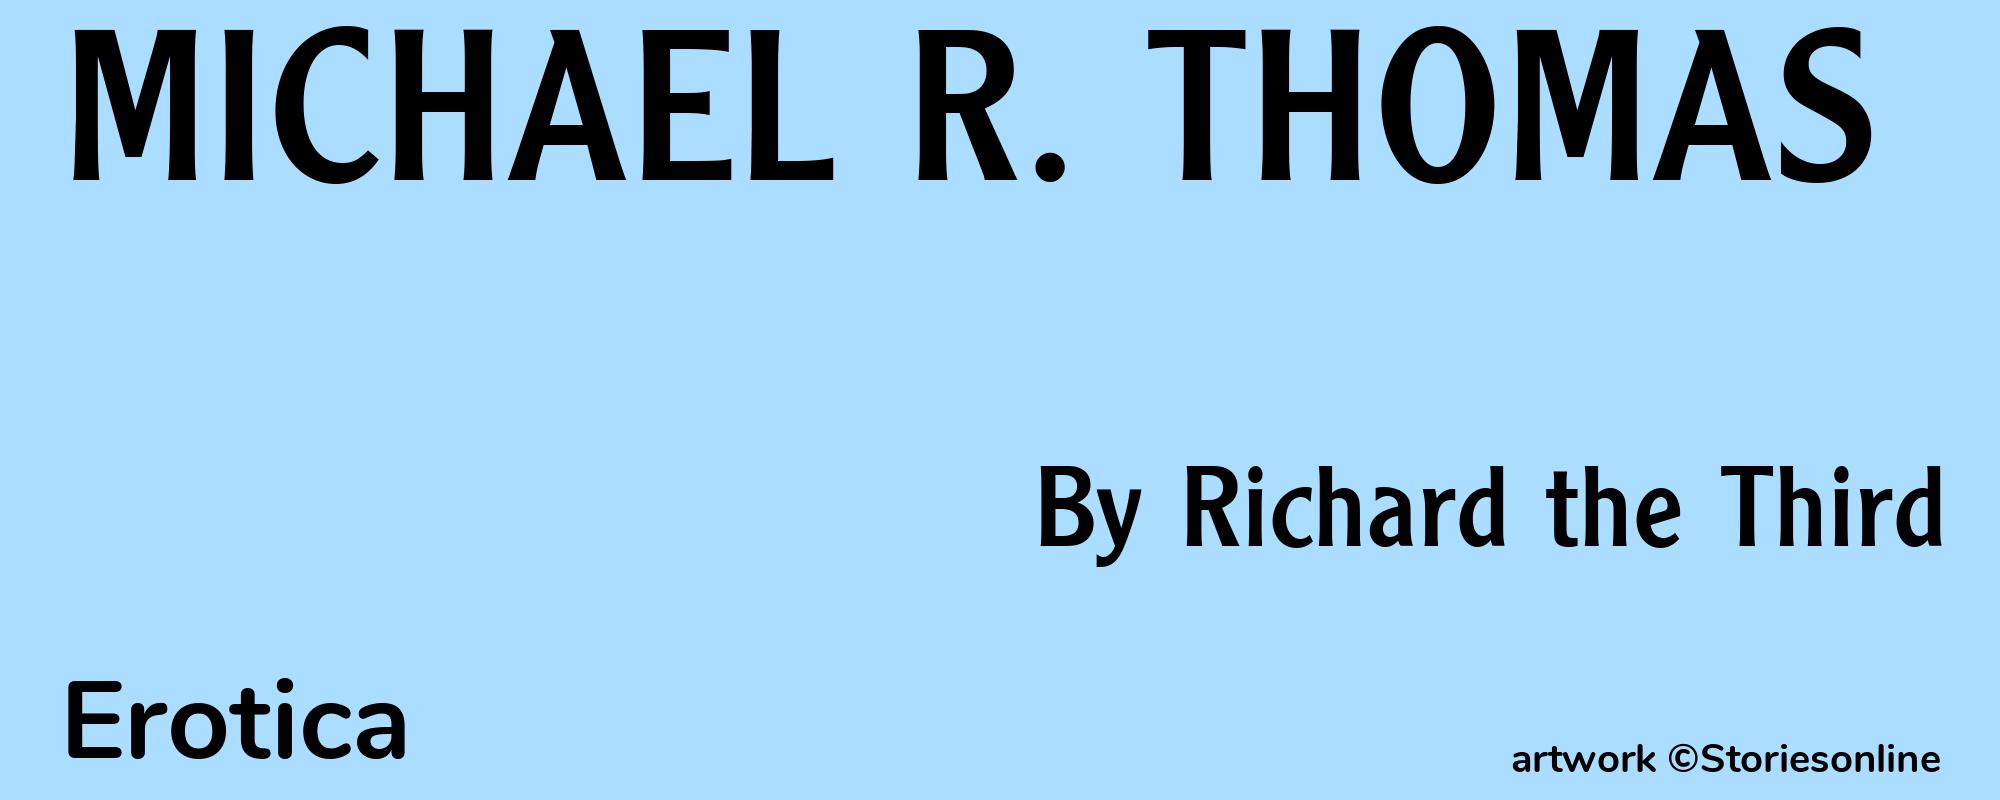 MICHAEL R. THOMAS - Cover